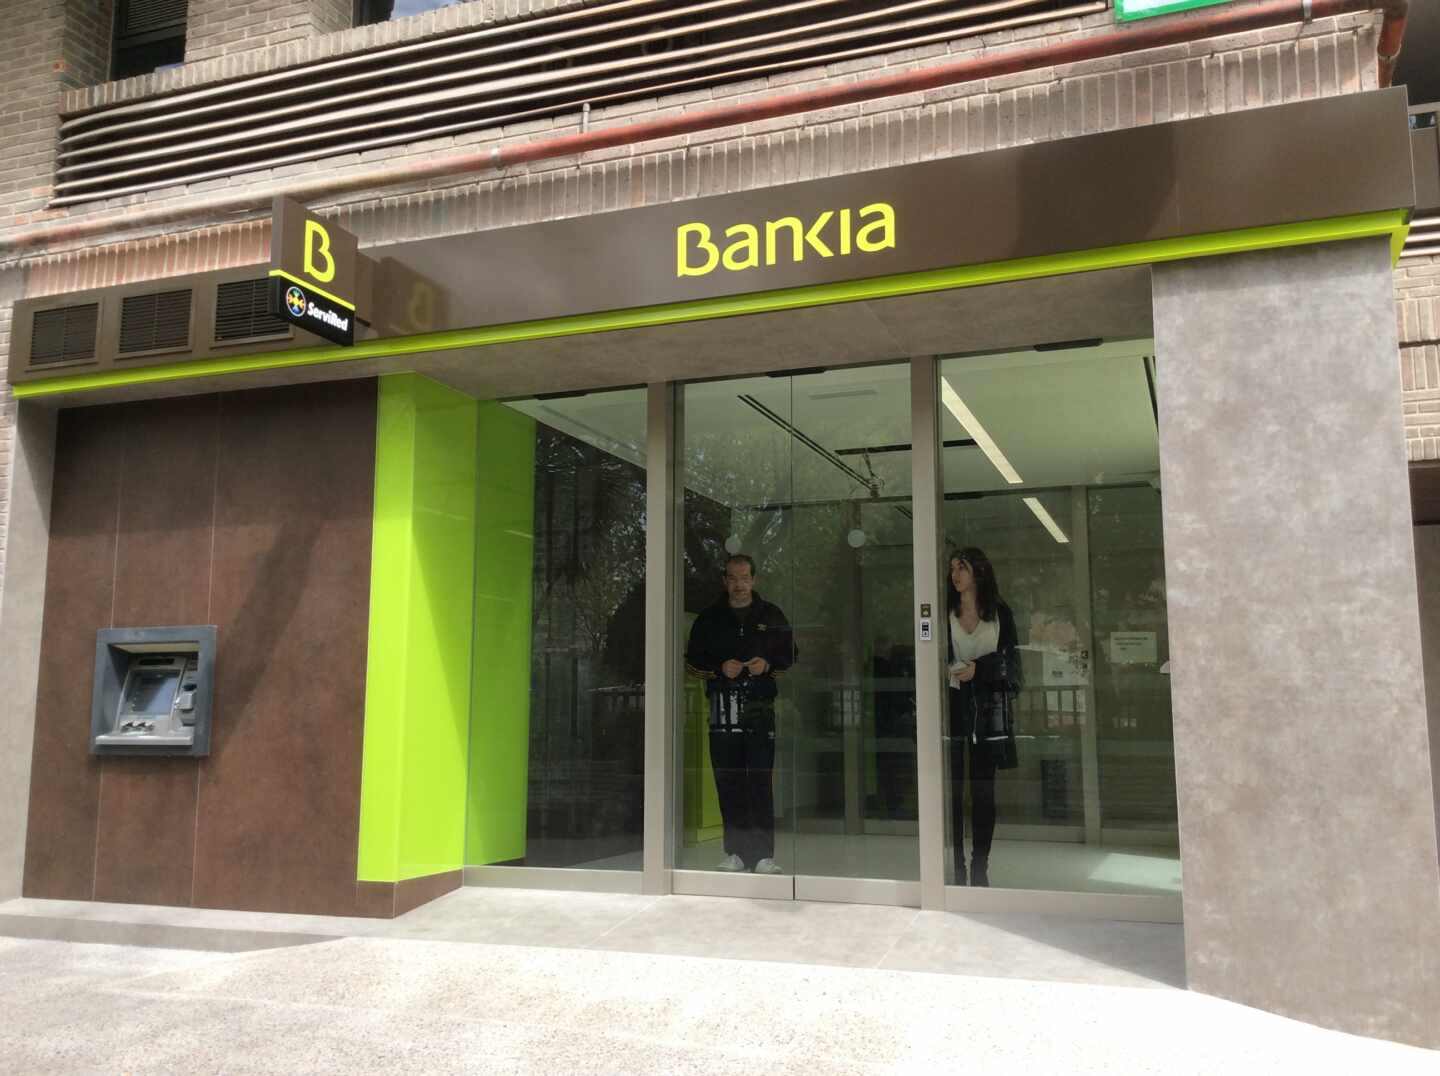 Bankia devolverá a 200 clientes el importe de la compra más cara que hagan en el 'Black Friday'